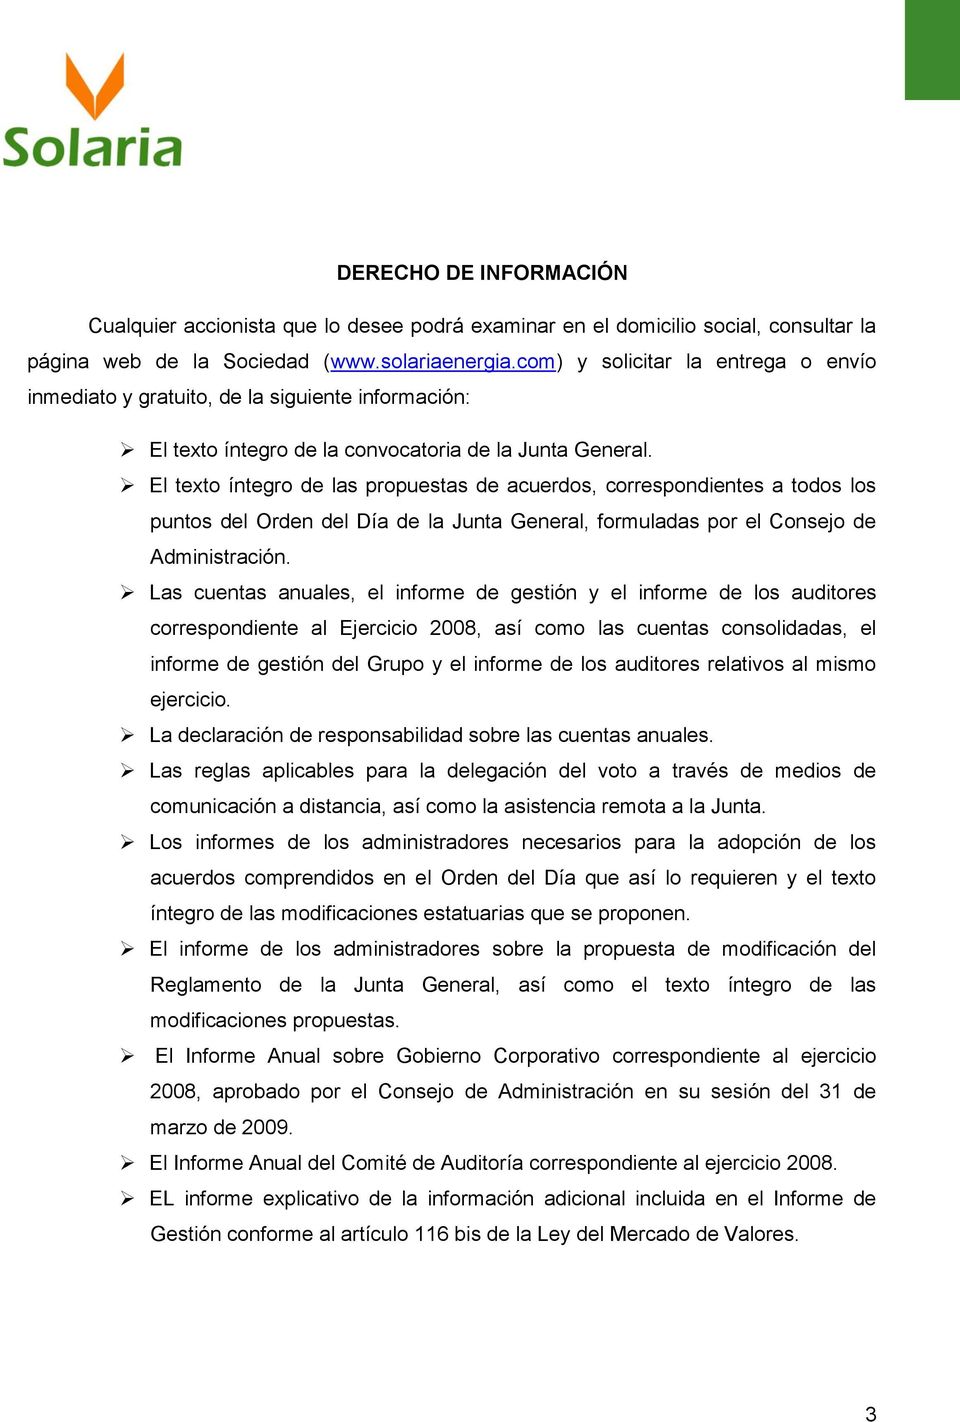 El texto íntegro de las propuestas de acuerdos, correspondientes a todos los puntos del Orden del Día de la Junta General, formuladas por el Consejo de Administración.